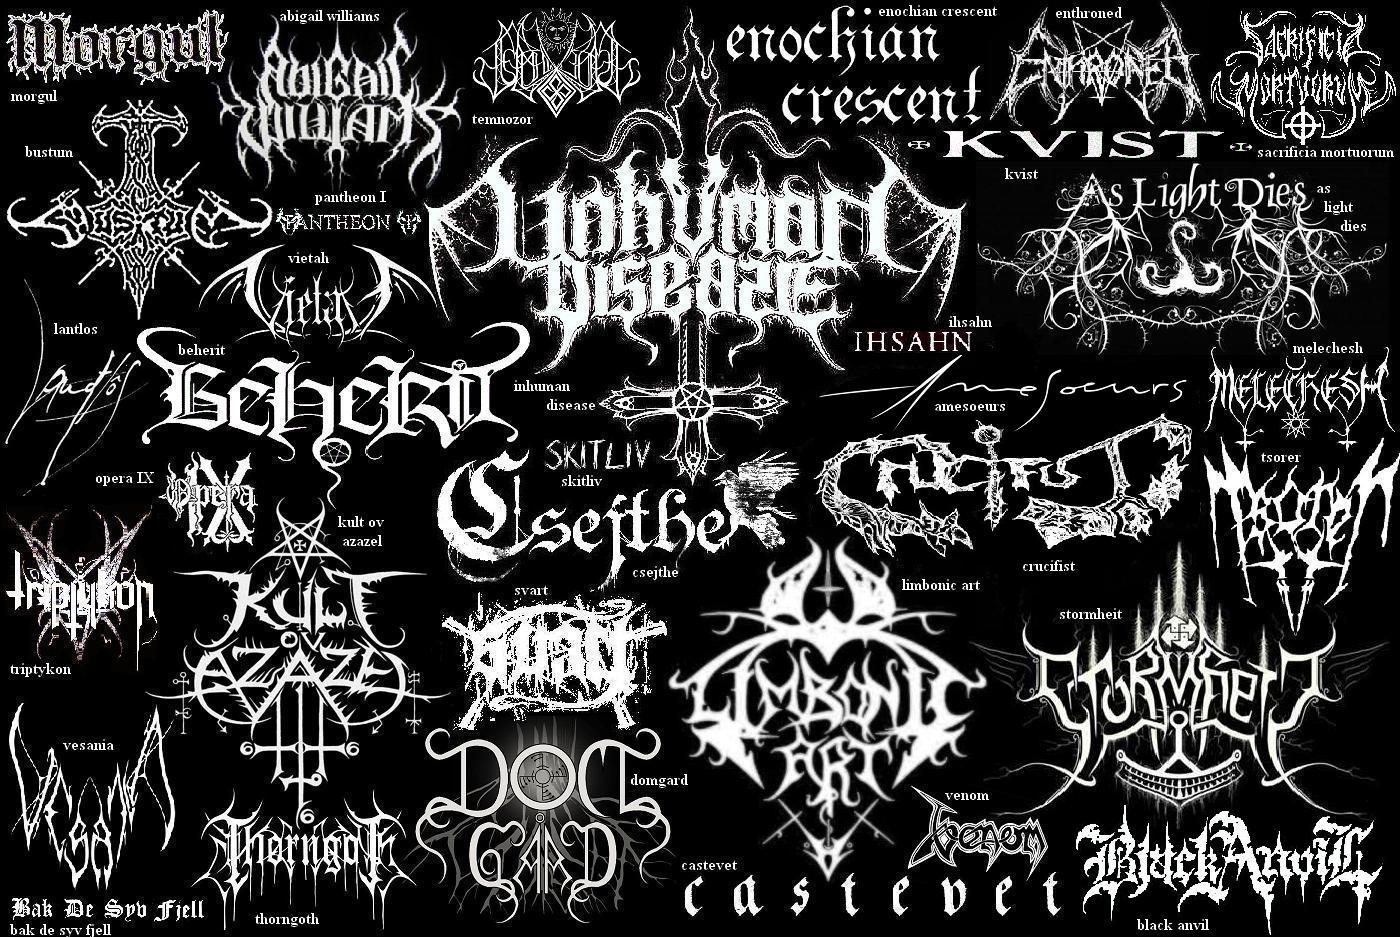 Rock and Metal Band Logo - Black metal Logos